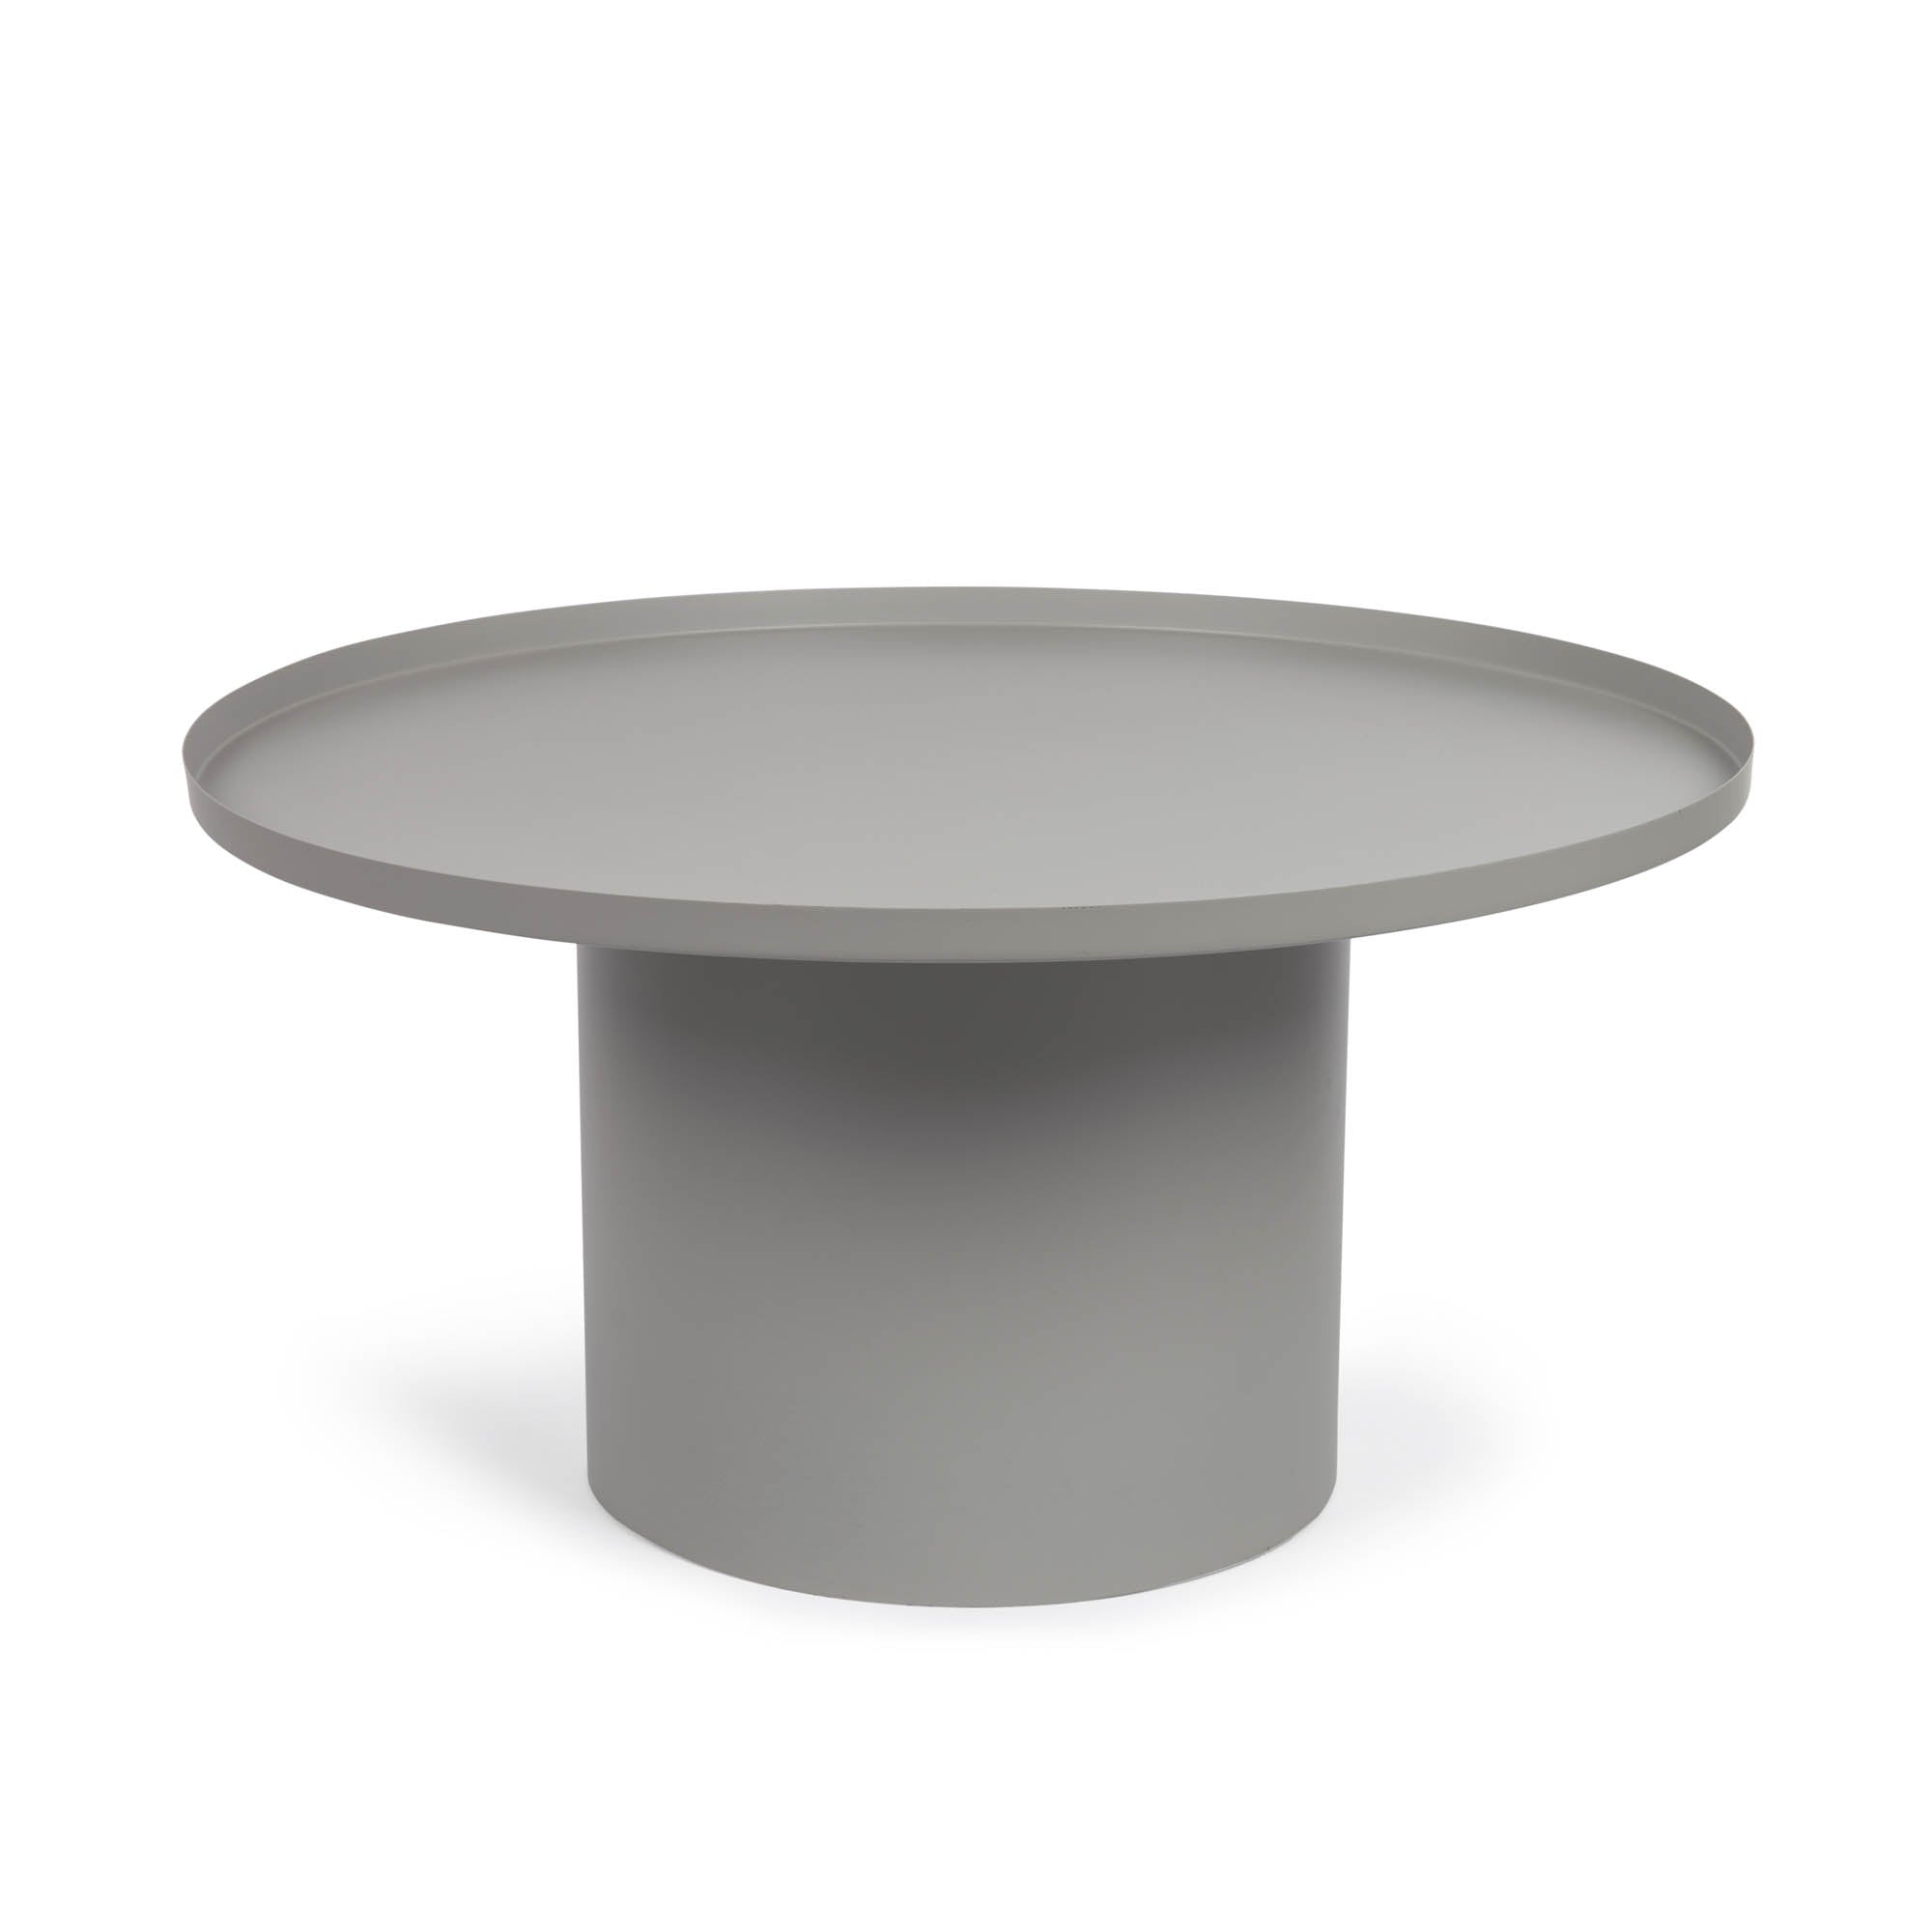 Fleksa round side table in grey metal Ø 72 cm